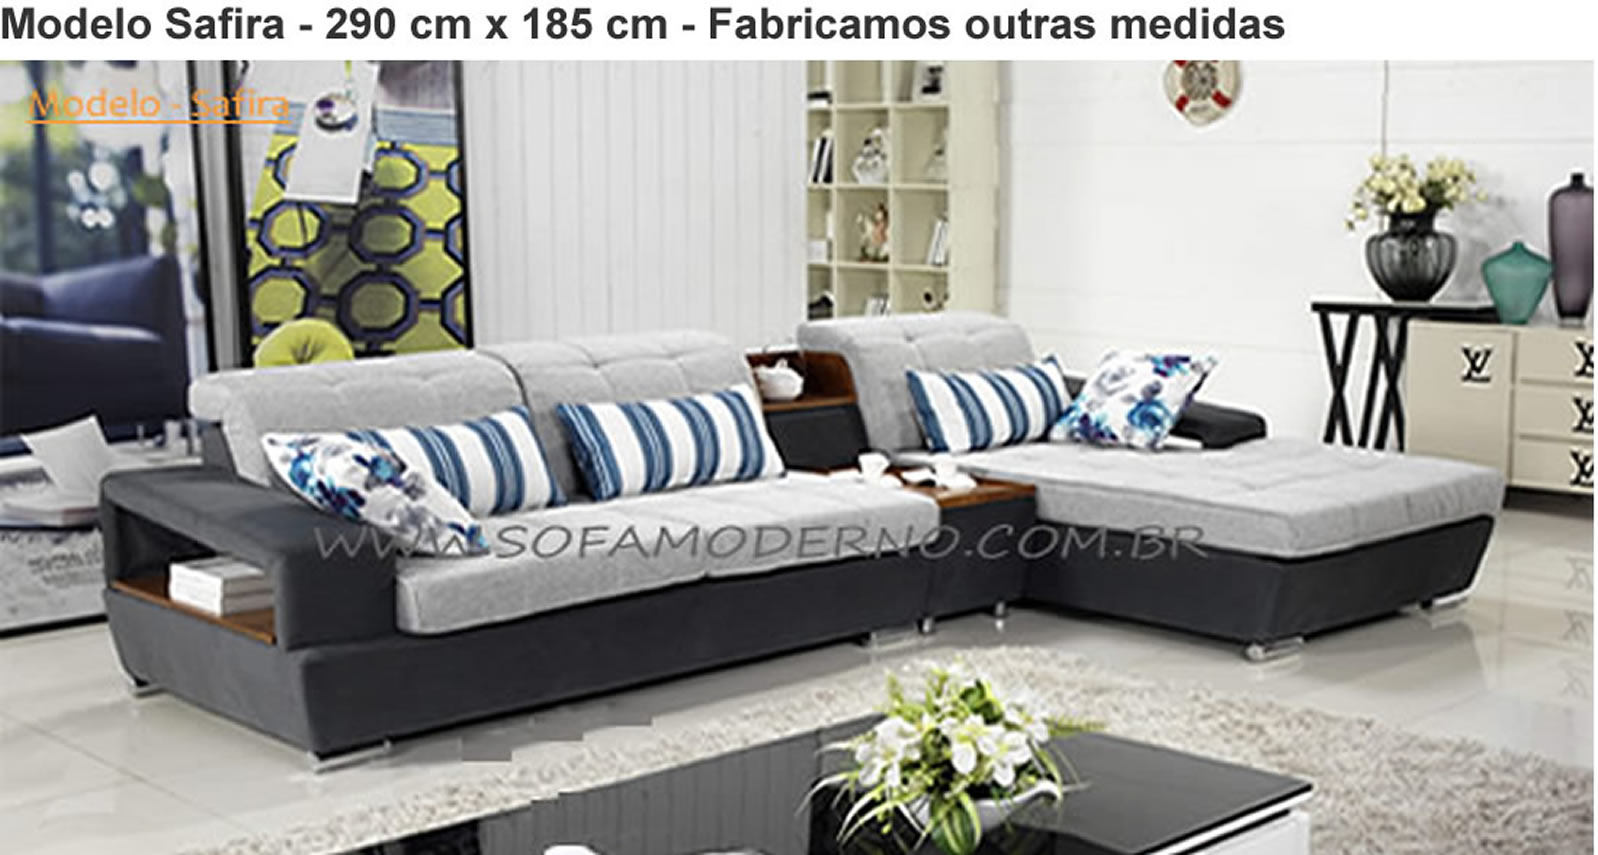 sofa com chaise - 6 lugares - 45 modelos de estofados com chaise |  sofamoderno.com.br